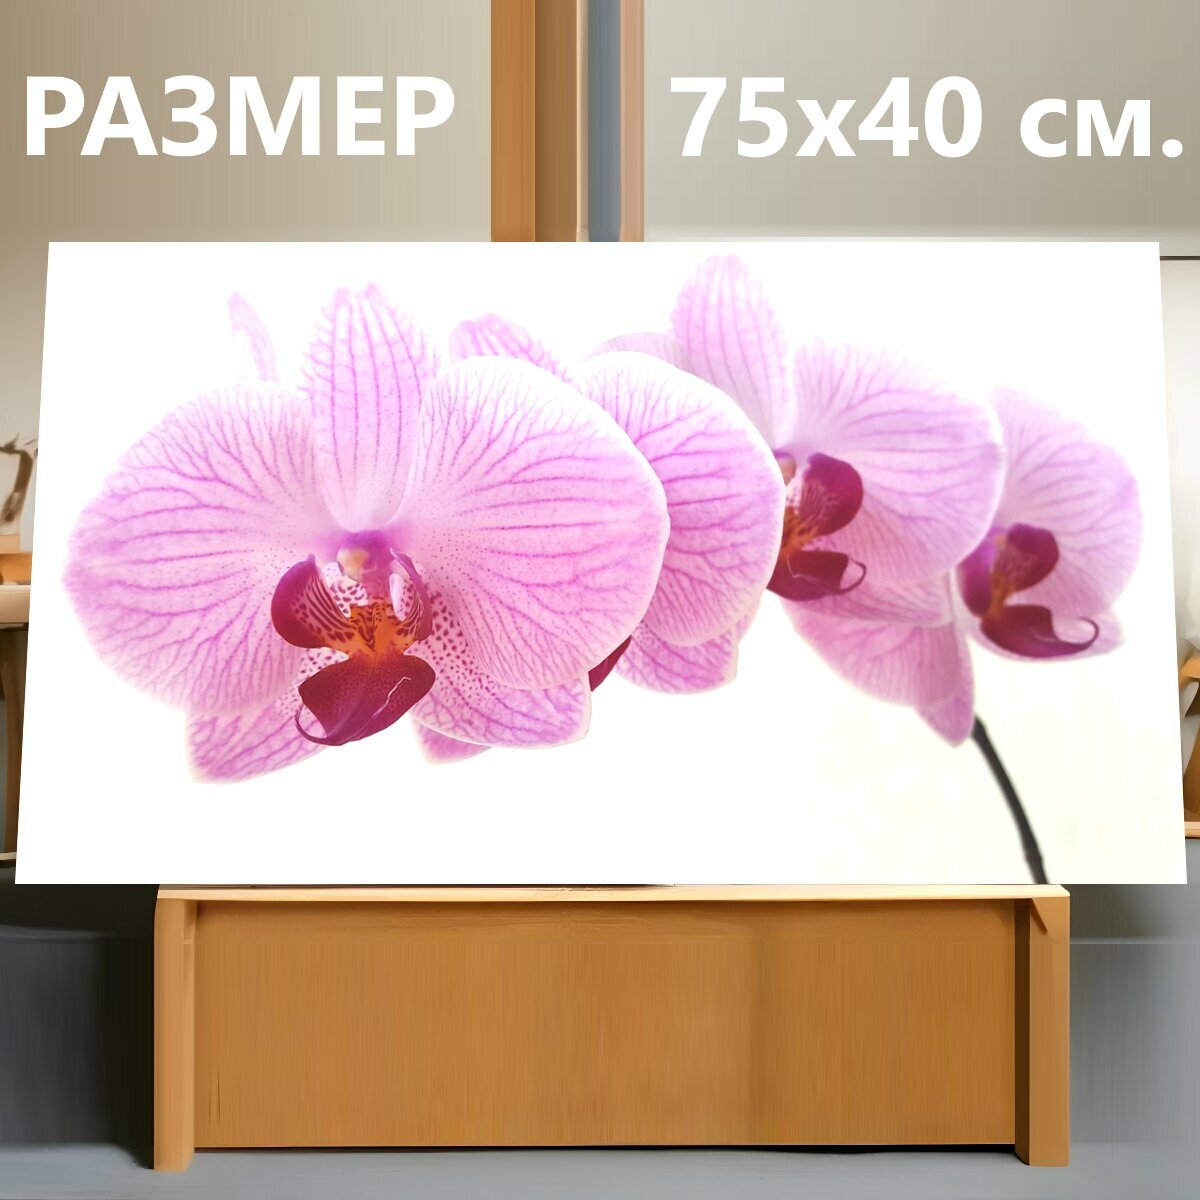 Картина на холсте "Орхидея, фаленопсис, цветок" на подрамнике 75х40 см. для интерьера